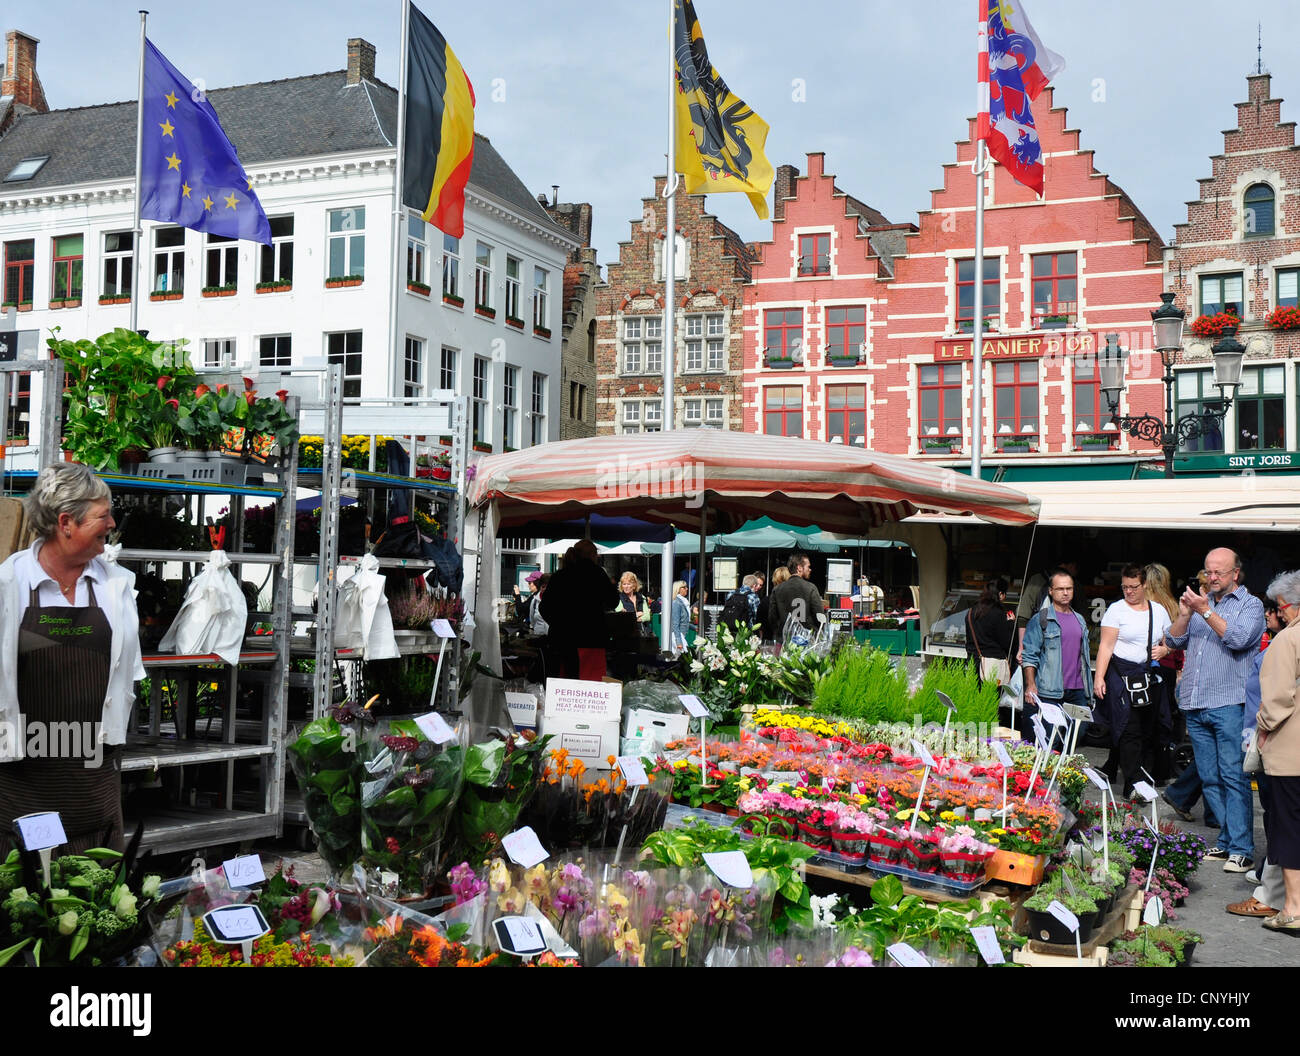 Belgio - Bruges - Piazza del Mercato - fiori colorati e bancarelle di frutta e verdura - luce del sole - Blu cielo Foto Stock